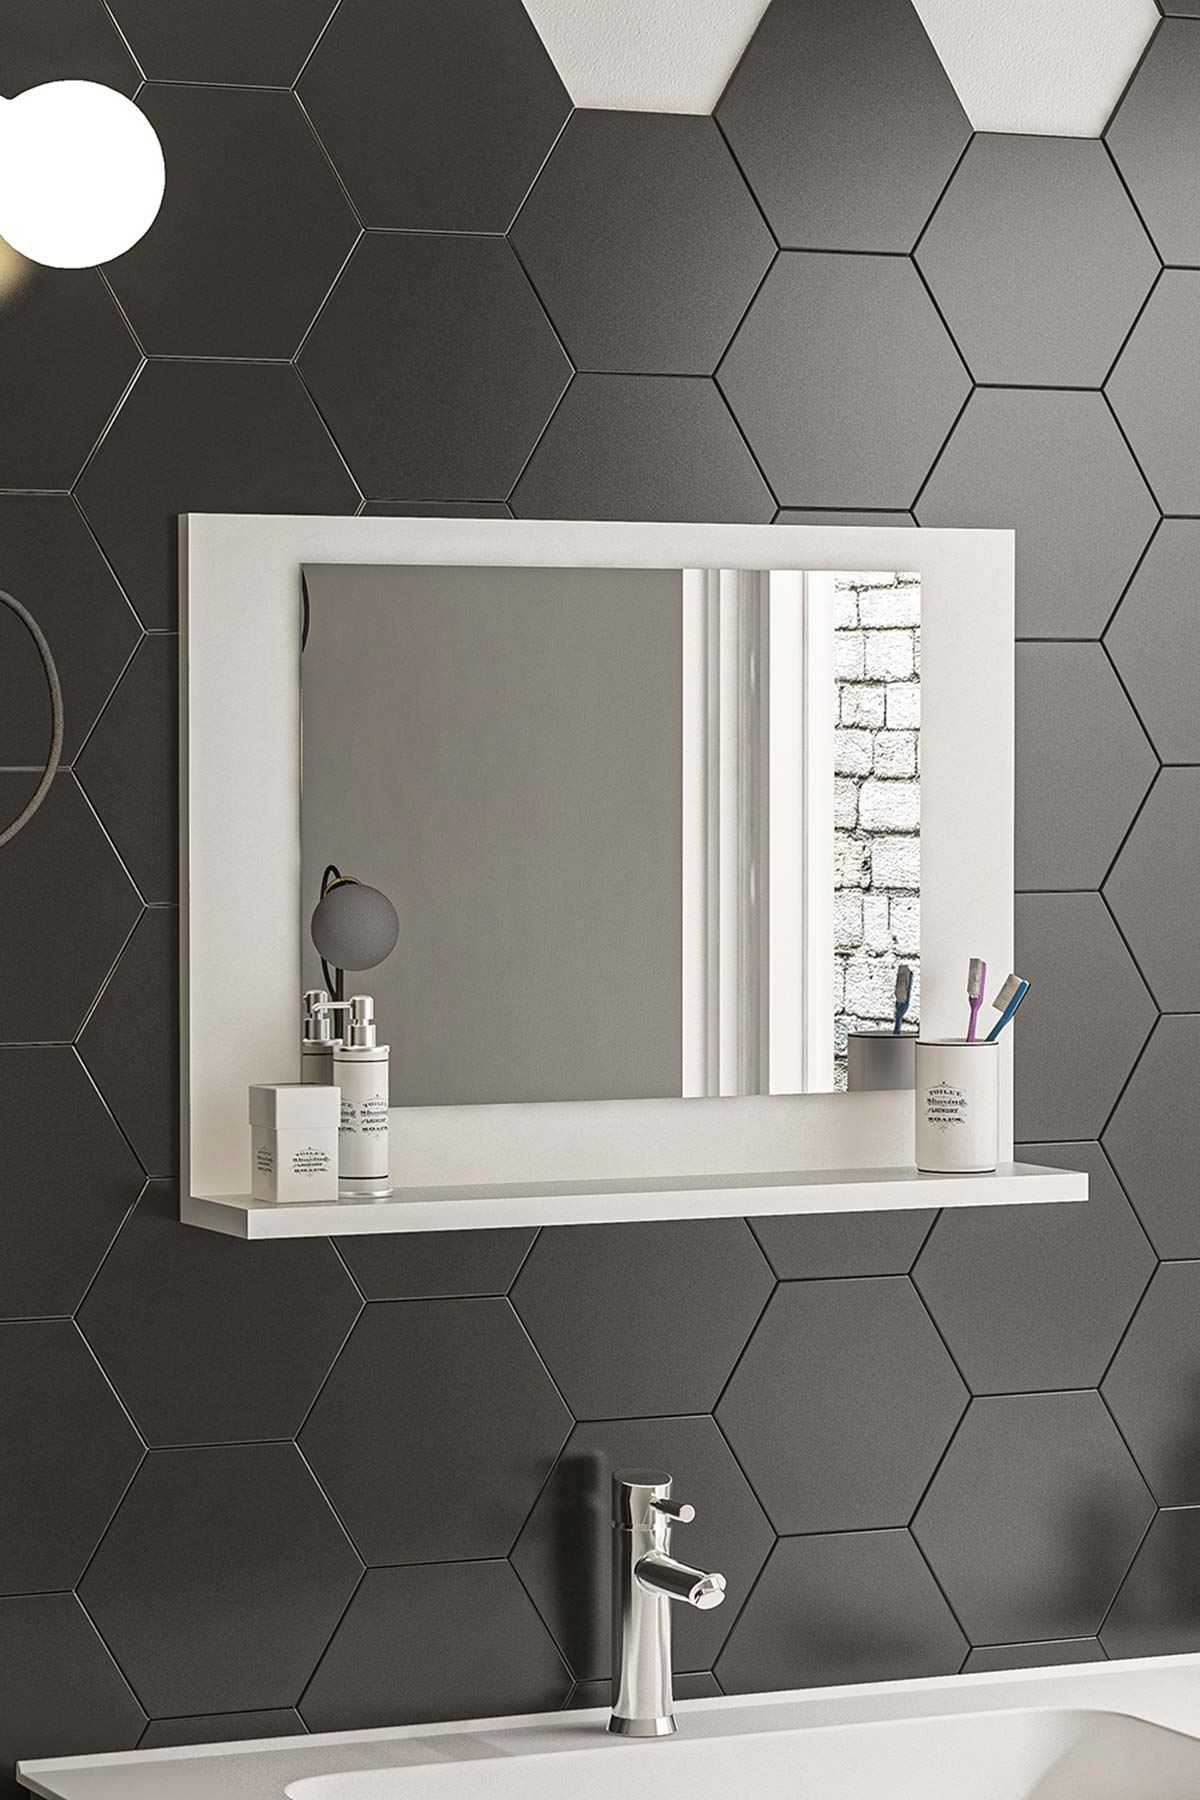 Bofigo 60x45 Cm Modena Banyo Rafı Lavabo Rafı Aynalı Raf Banyo Aynası Beyaz